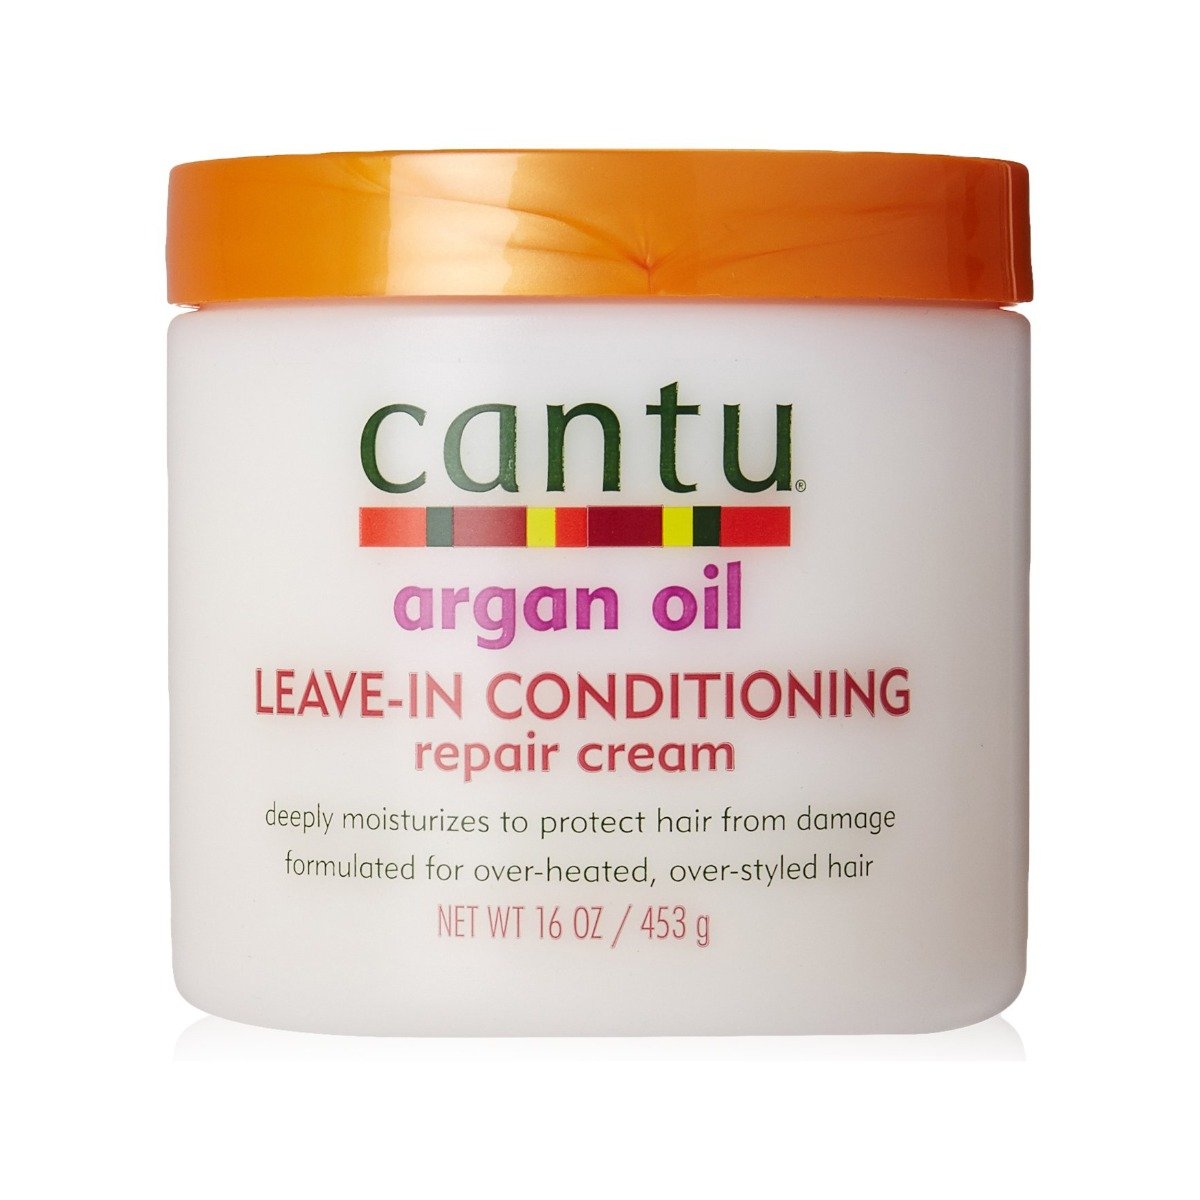 Cantu Argan Oil Leave-In Conditioning Repair Cream - 453g - Bloom Pharmacy